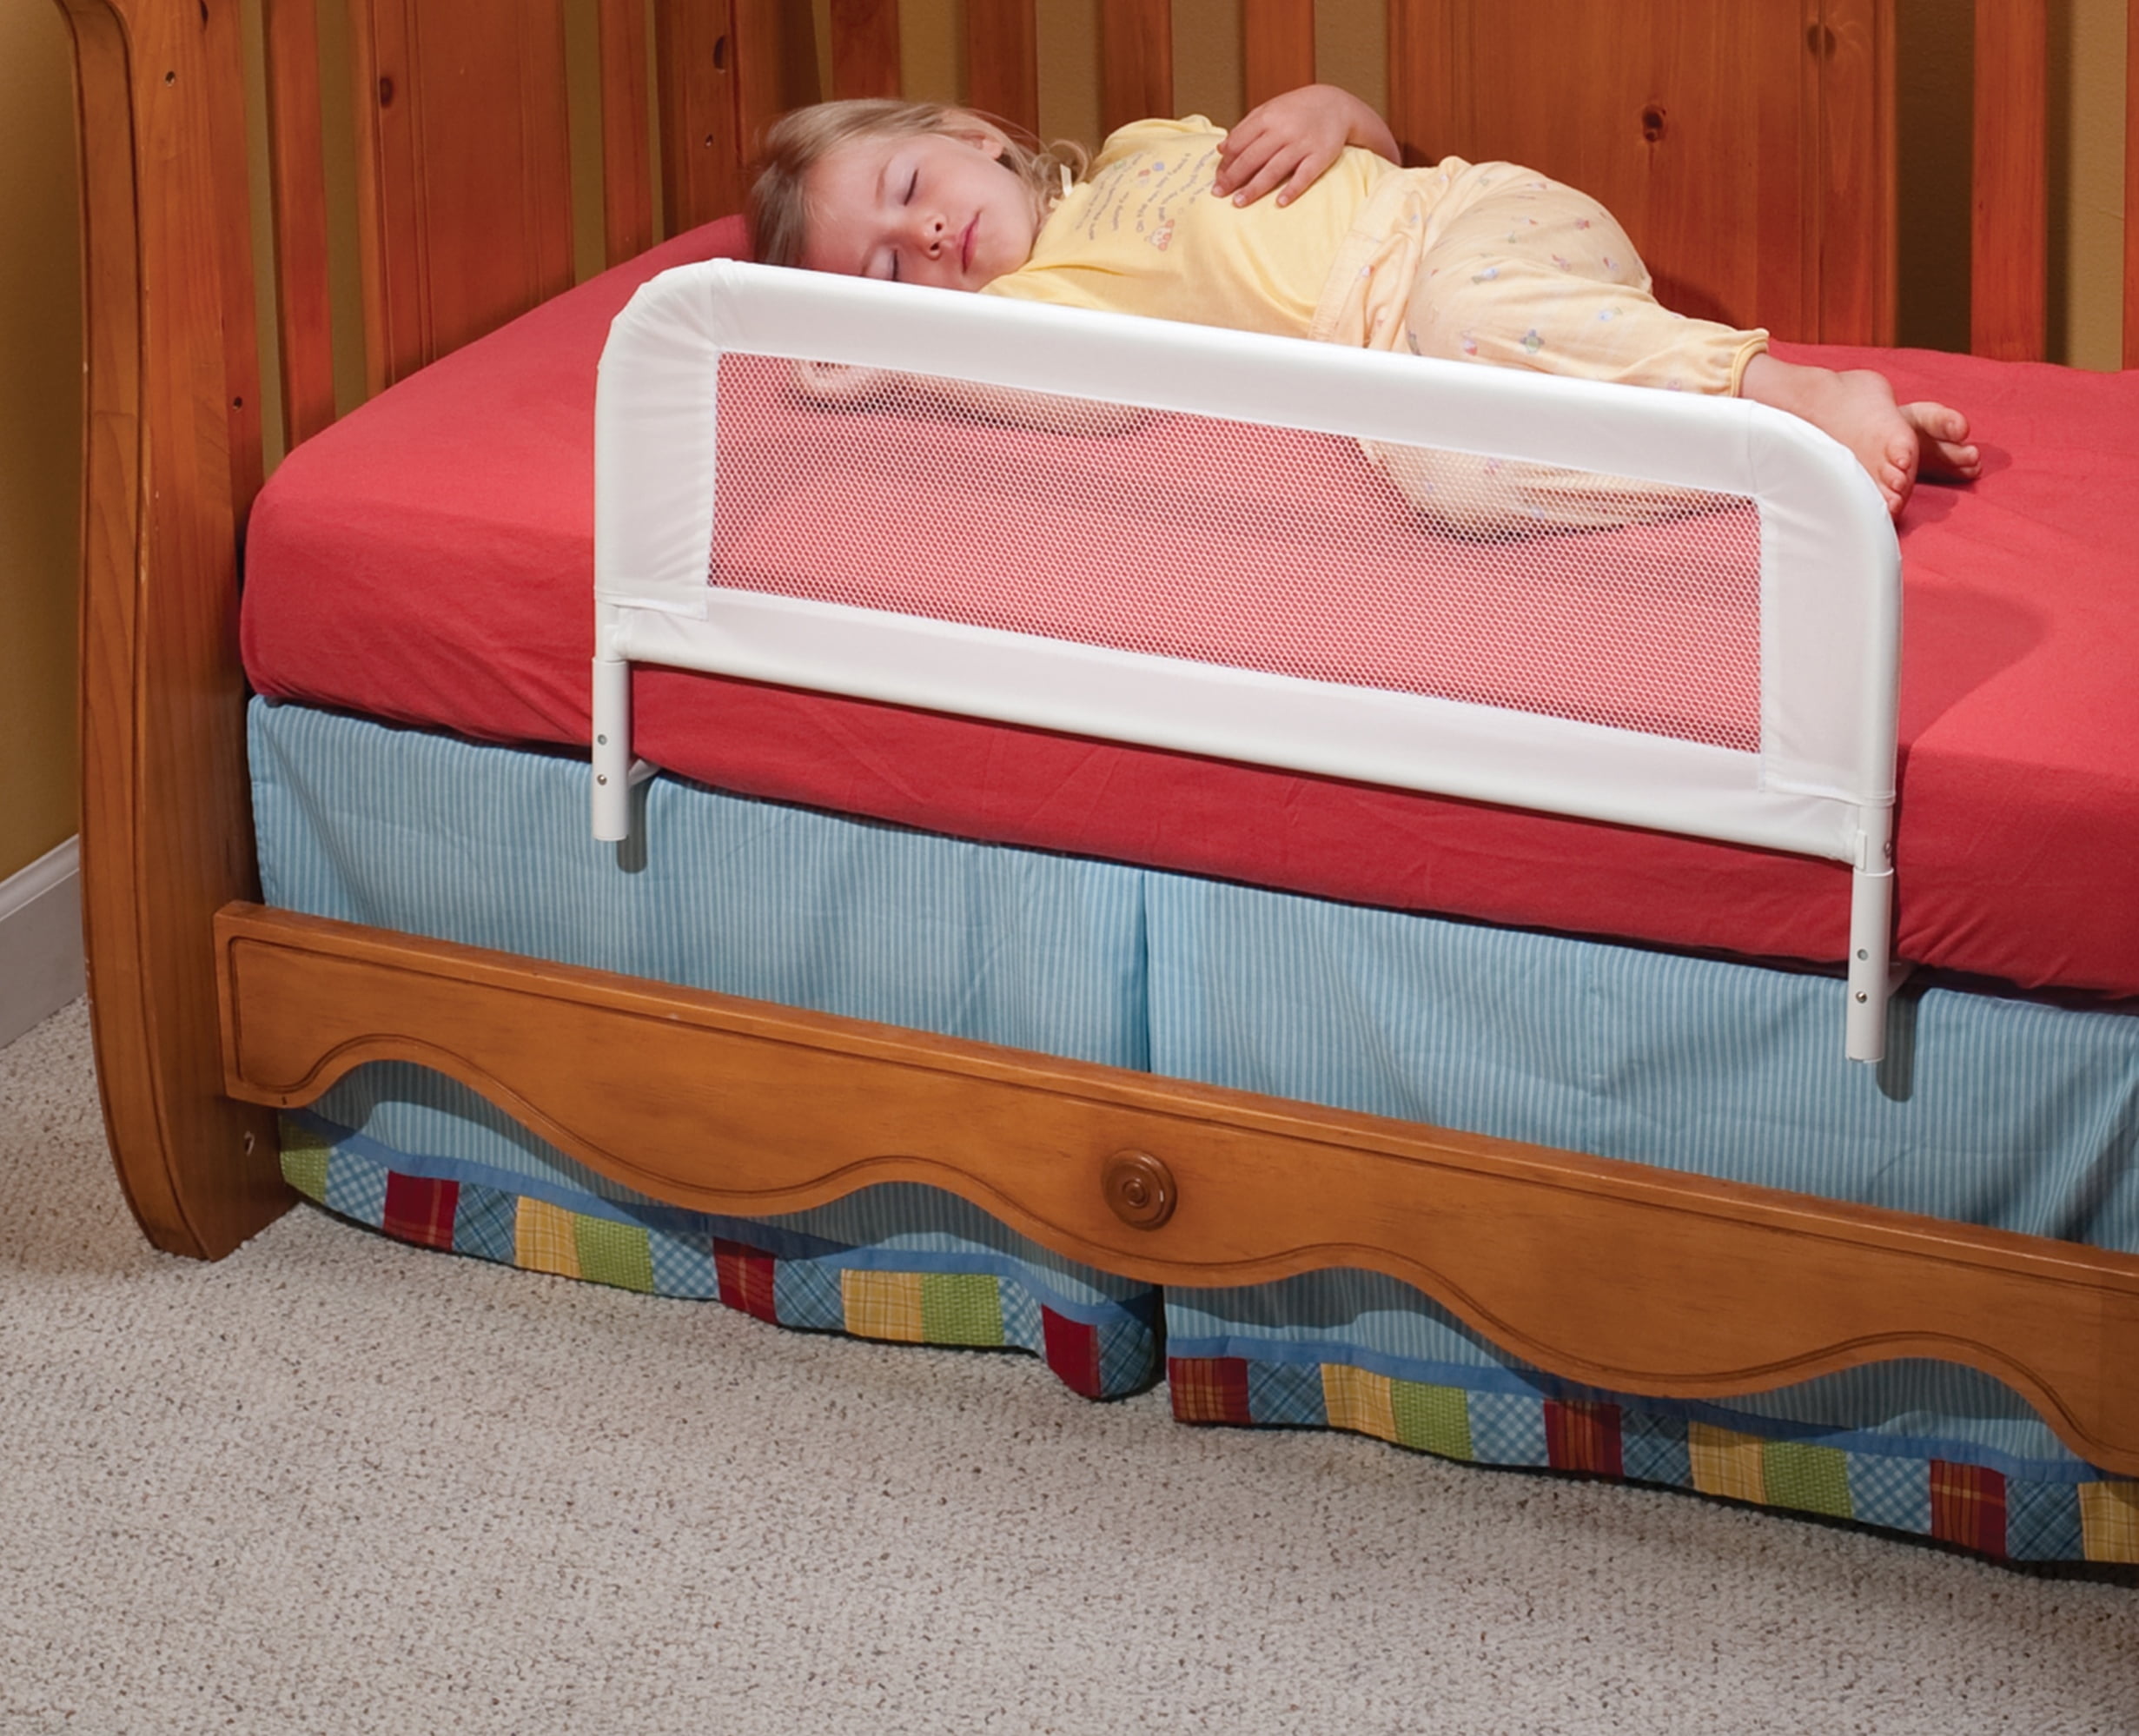 Защита от падения с кровати для ребенка